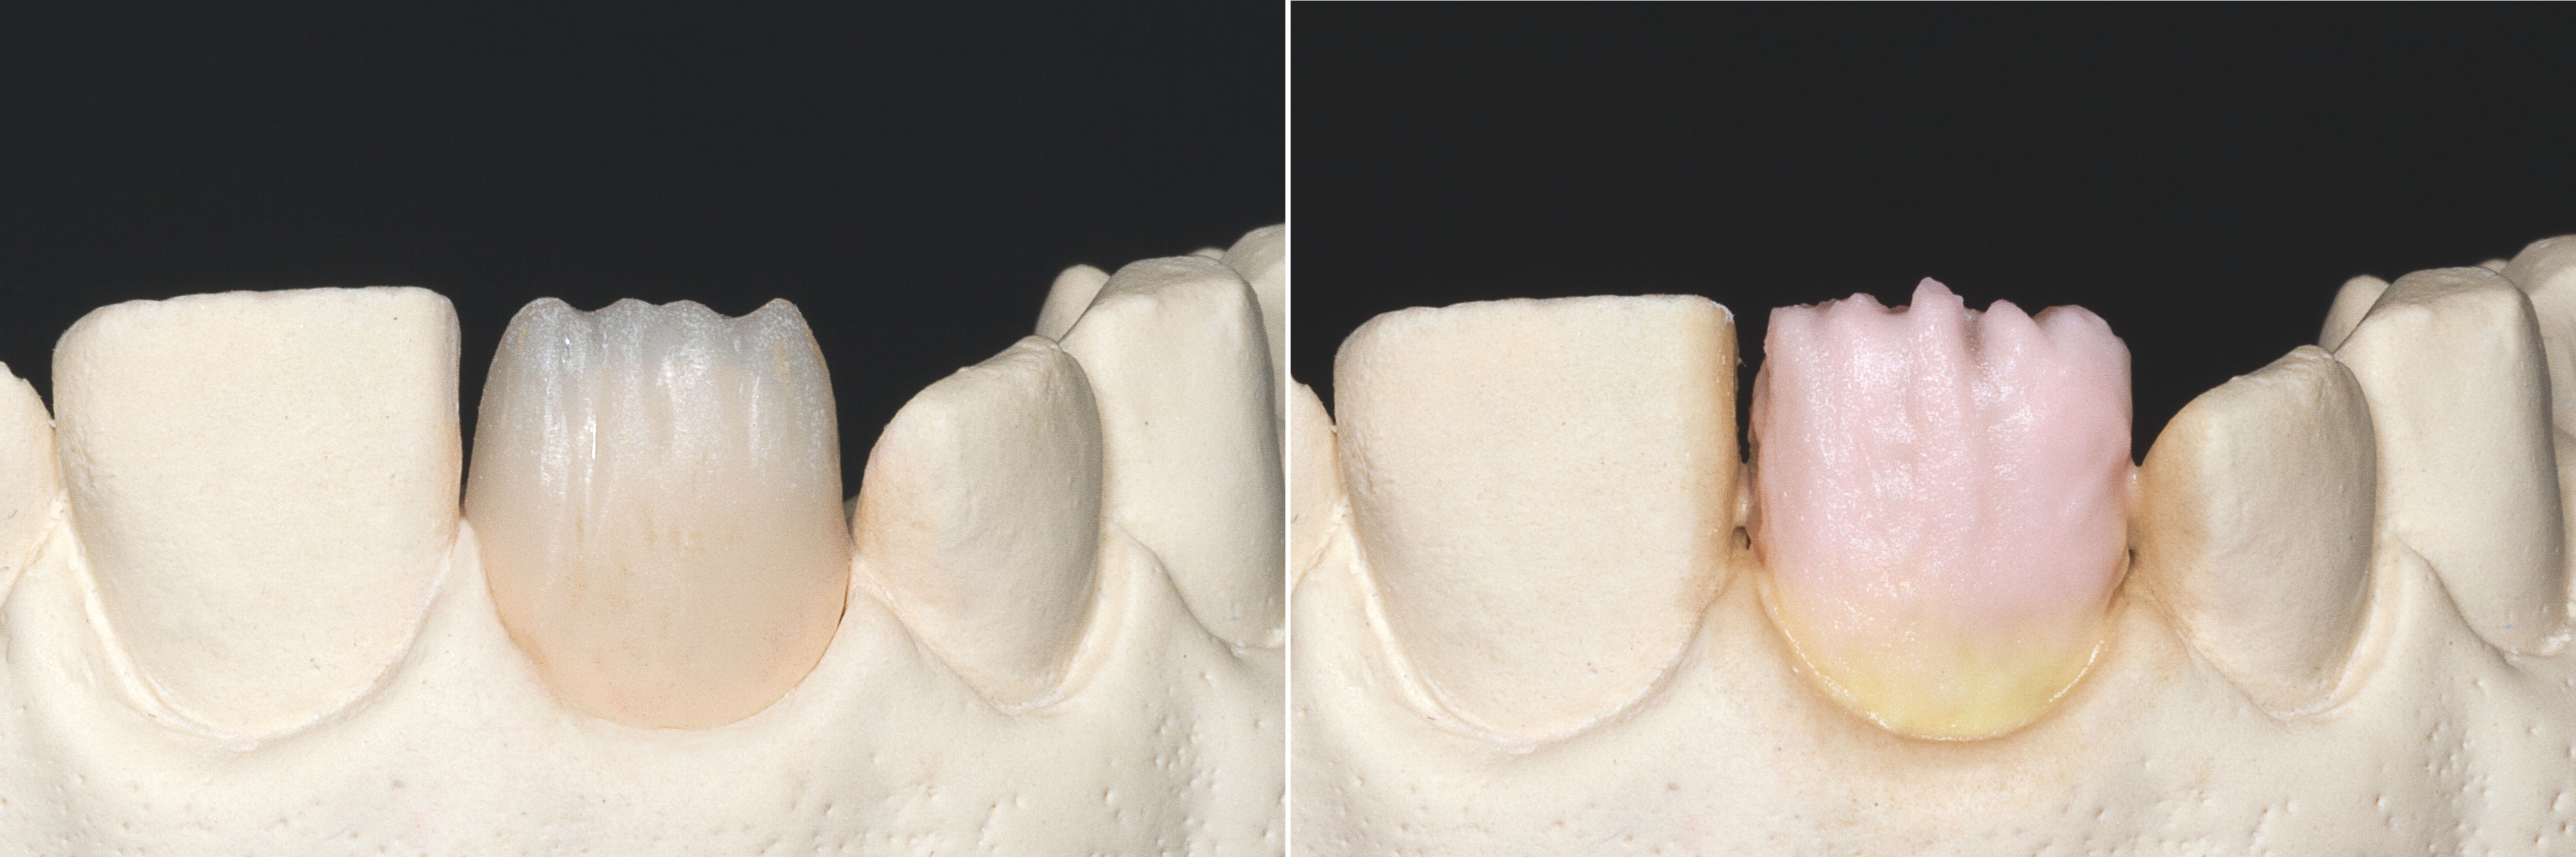 Fig. 1: Corona reducida por incisal.
Fig. 2: Compleción de la forma del diente: en la zona cervical mediante VITA VM 11 SUN DENTINE y en la zona del cuerpo con VITA VM 11 TRANSPA DENTINE en el color dental adecuado.